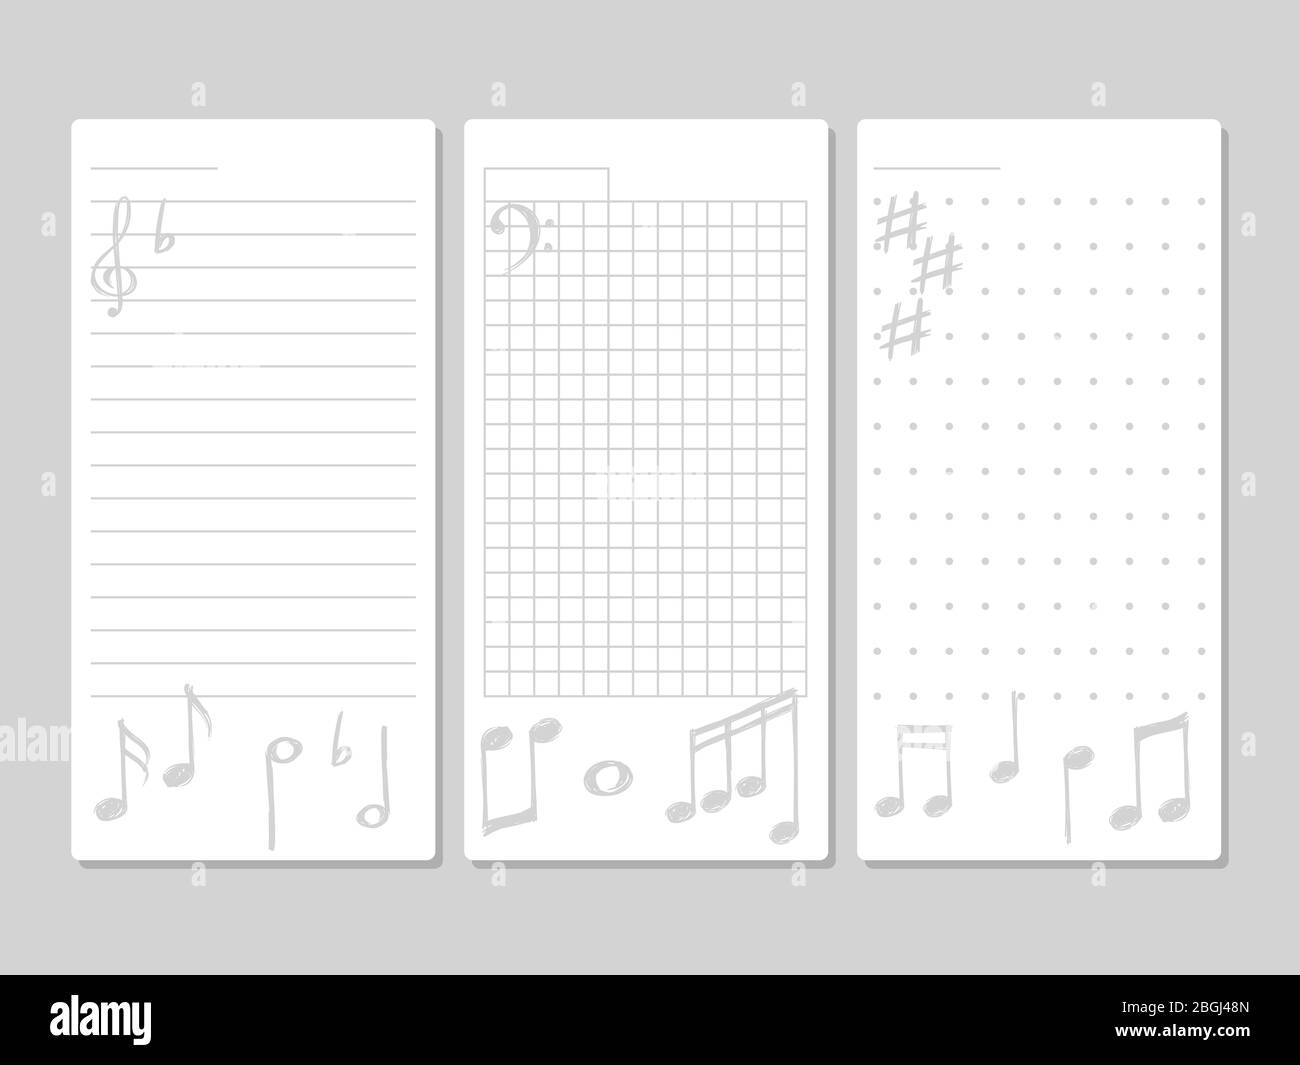 Seite für Noten, Do To oder Wunschliste mit musikalischen Elementen des Sets. Vektorgrafik Stock Vektor